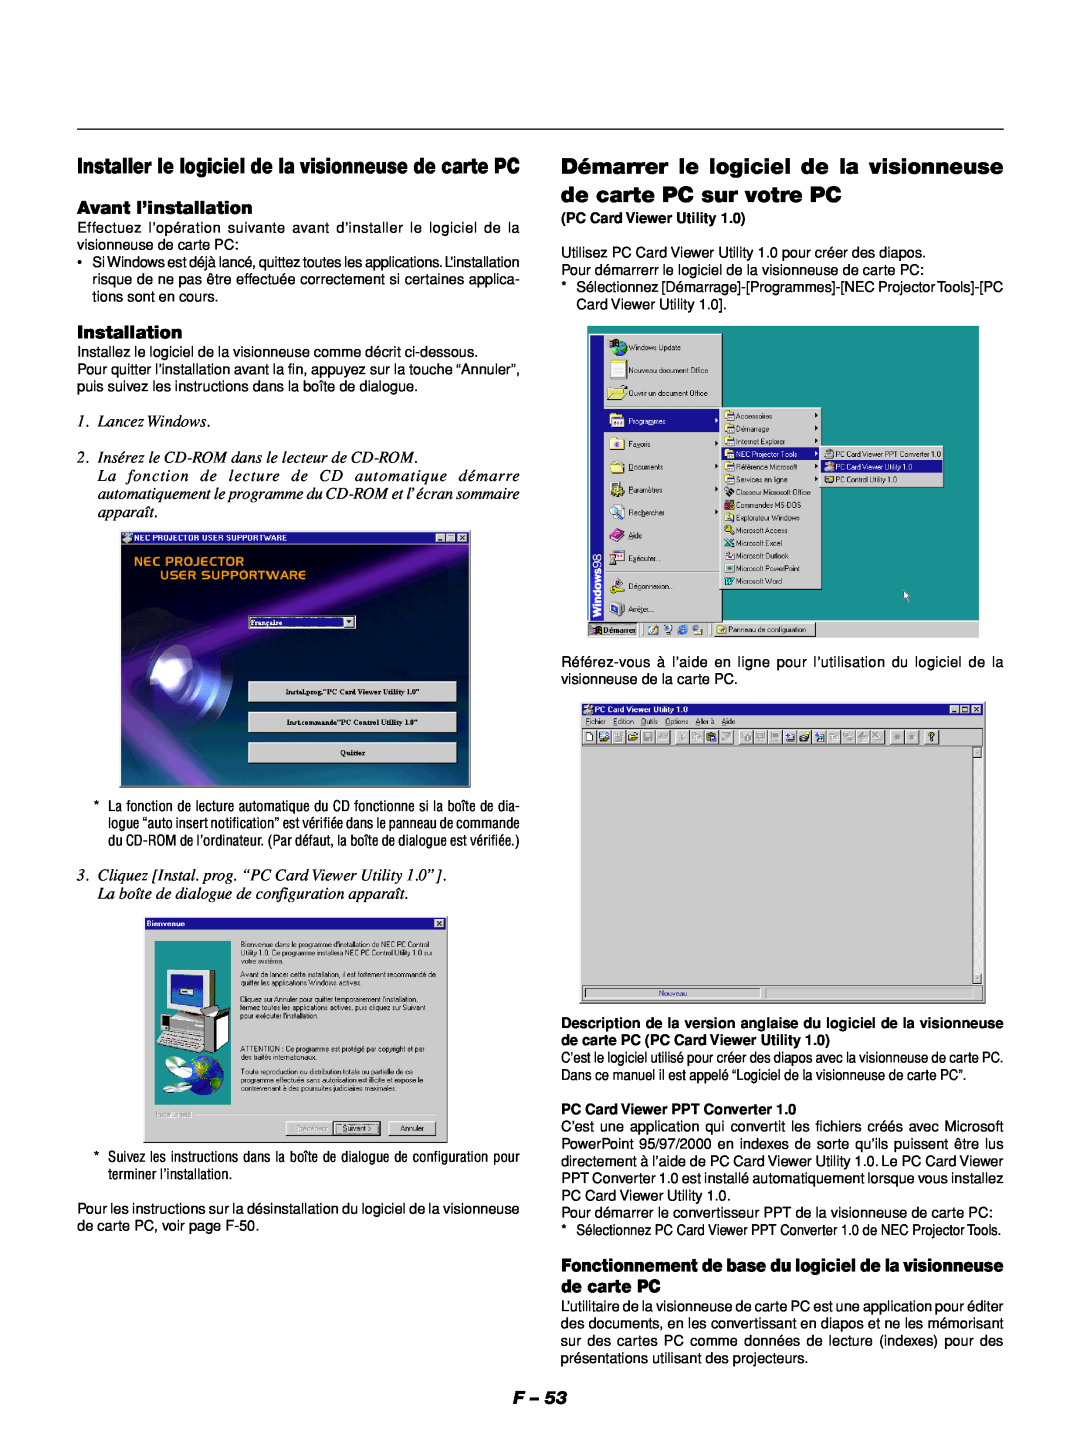 NEC GT1150 Démarrer le logiciel de la visionneuse de carte PC sur votre PC, Installation, Avant l’installation 